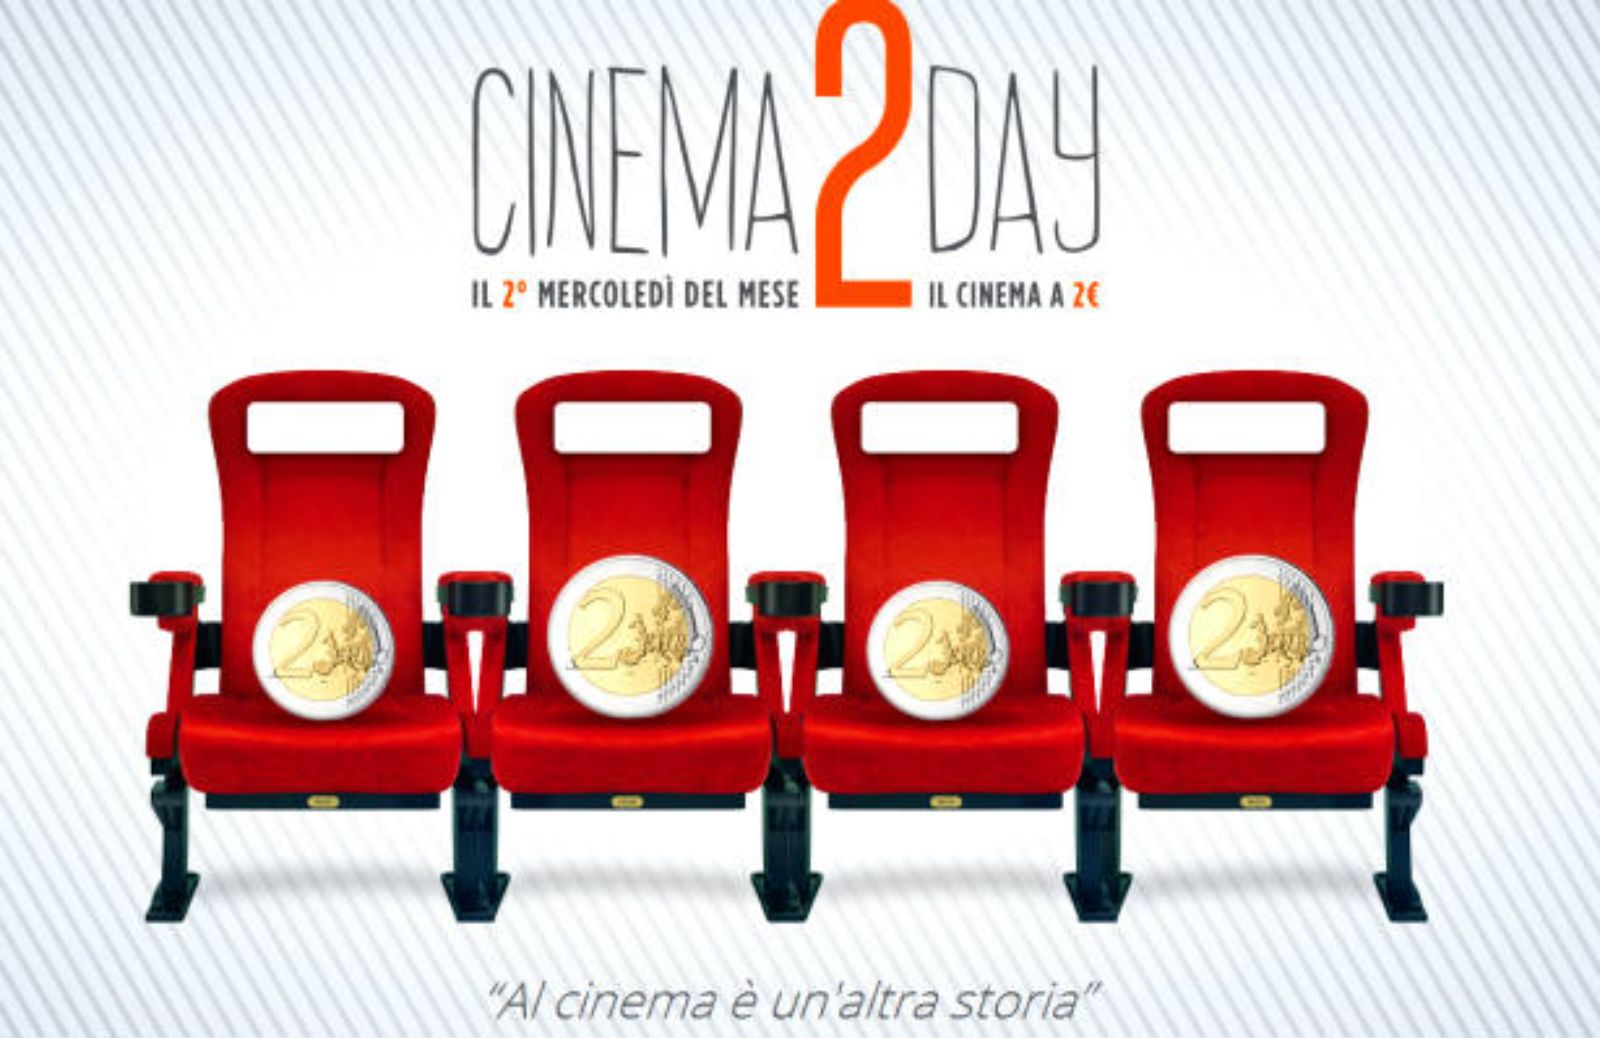 Cinema2day: dal 14 settembre il mercoledì in sala a 2 euro